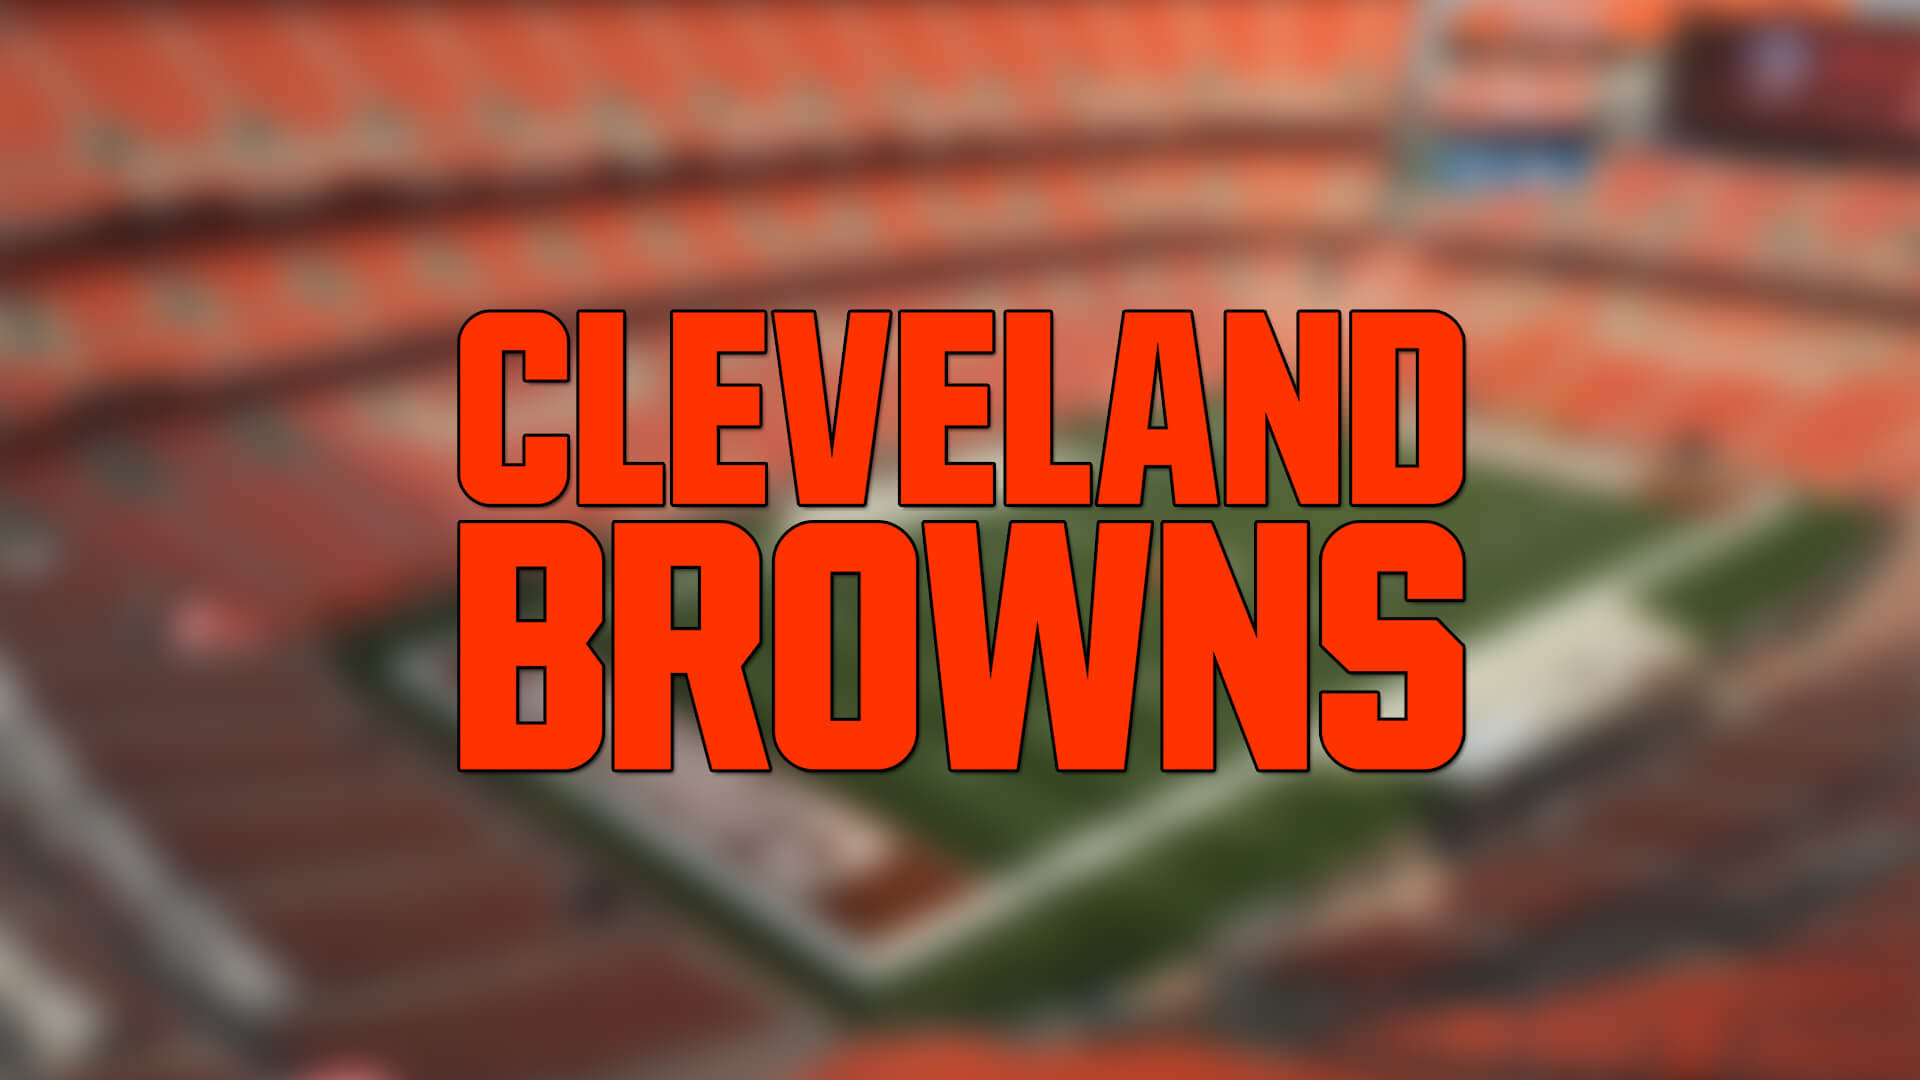 Cleveland Browns 5 Oyuncusunu Reserve/Covid-19 Listesine Yerleştirdi | Korumalı Futbol Türkiye